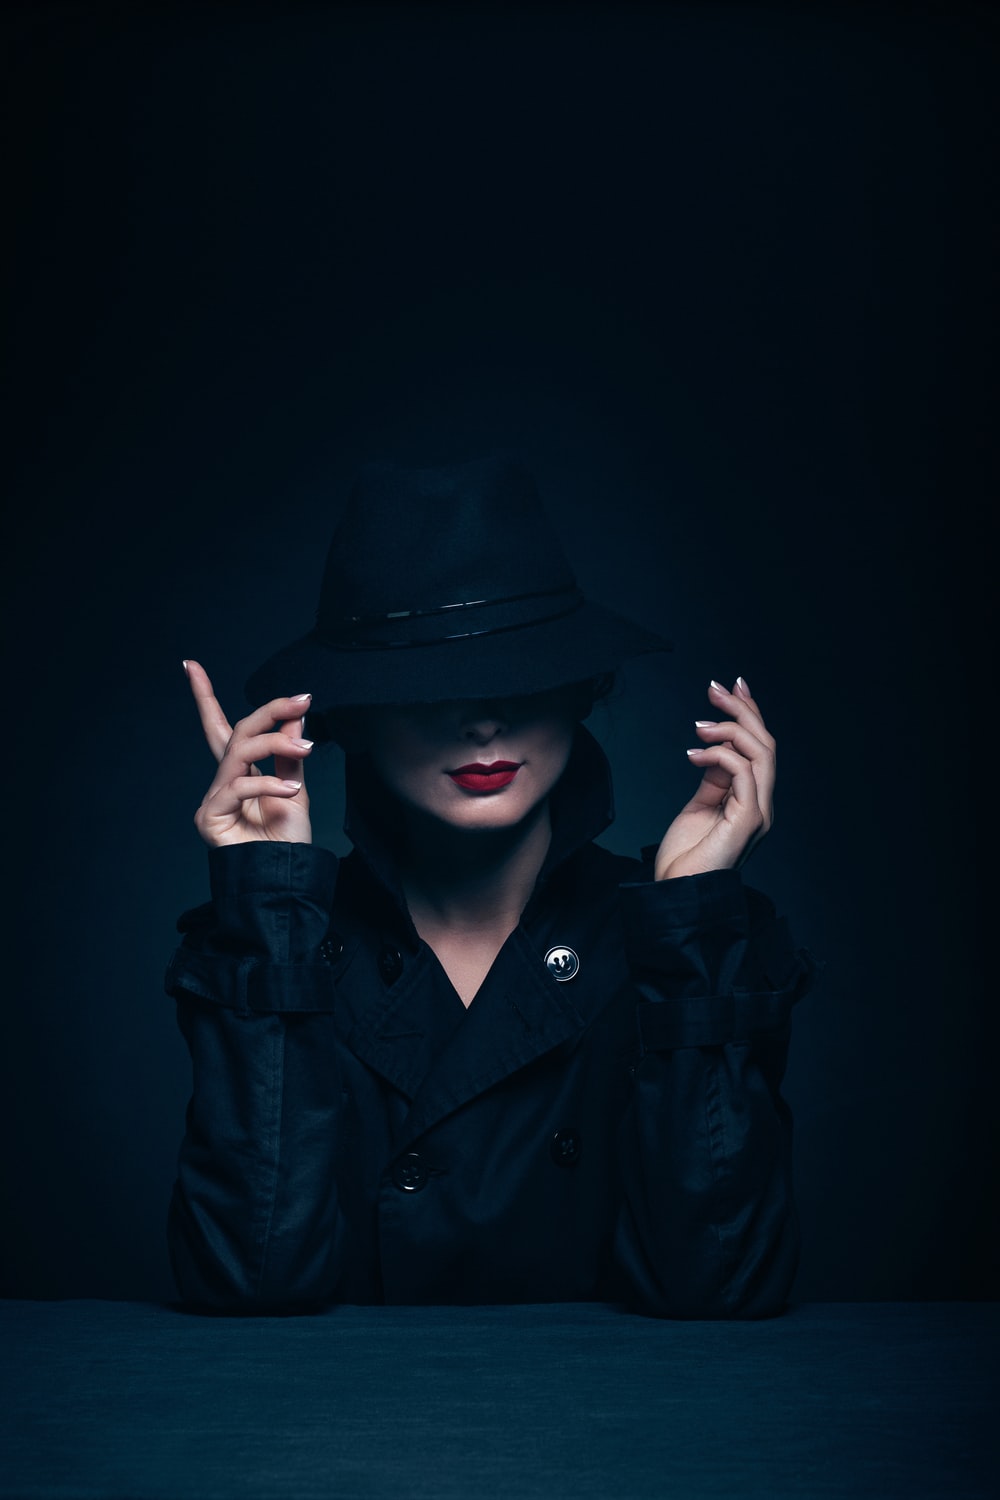 Hãy ngắm nhìn hình ảnh của một phụ nữ trong áo khoác và mũ đen. Với sự kết hợp từ hai trang phục này, cô ấy trông thật cá tính và bí ẩn. Bạn sẽ không muốn bỏ lỡ cơ hội hiểu rõ hơn về phong cách này qua hình ảnh độc đáo này.